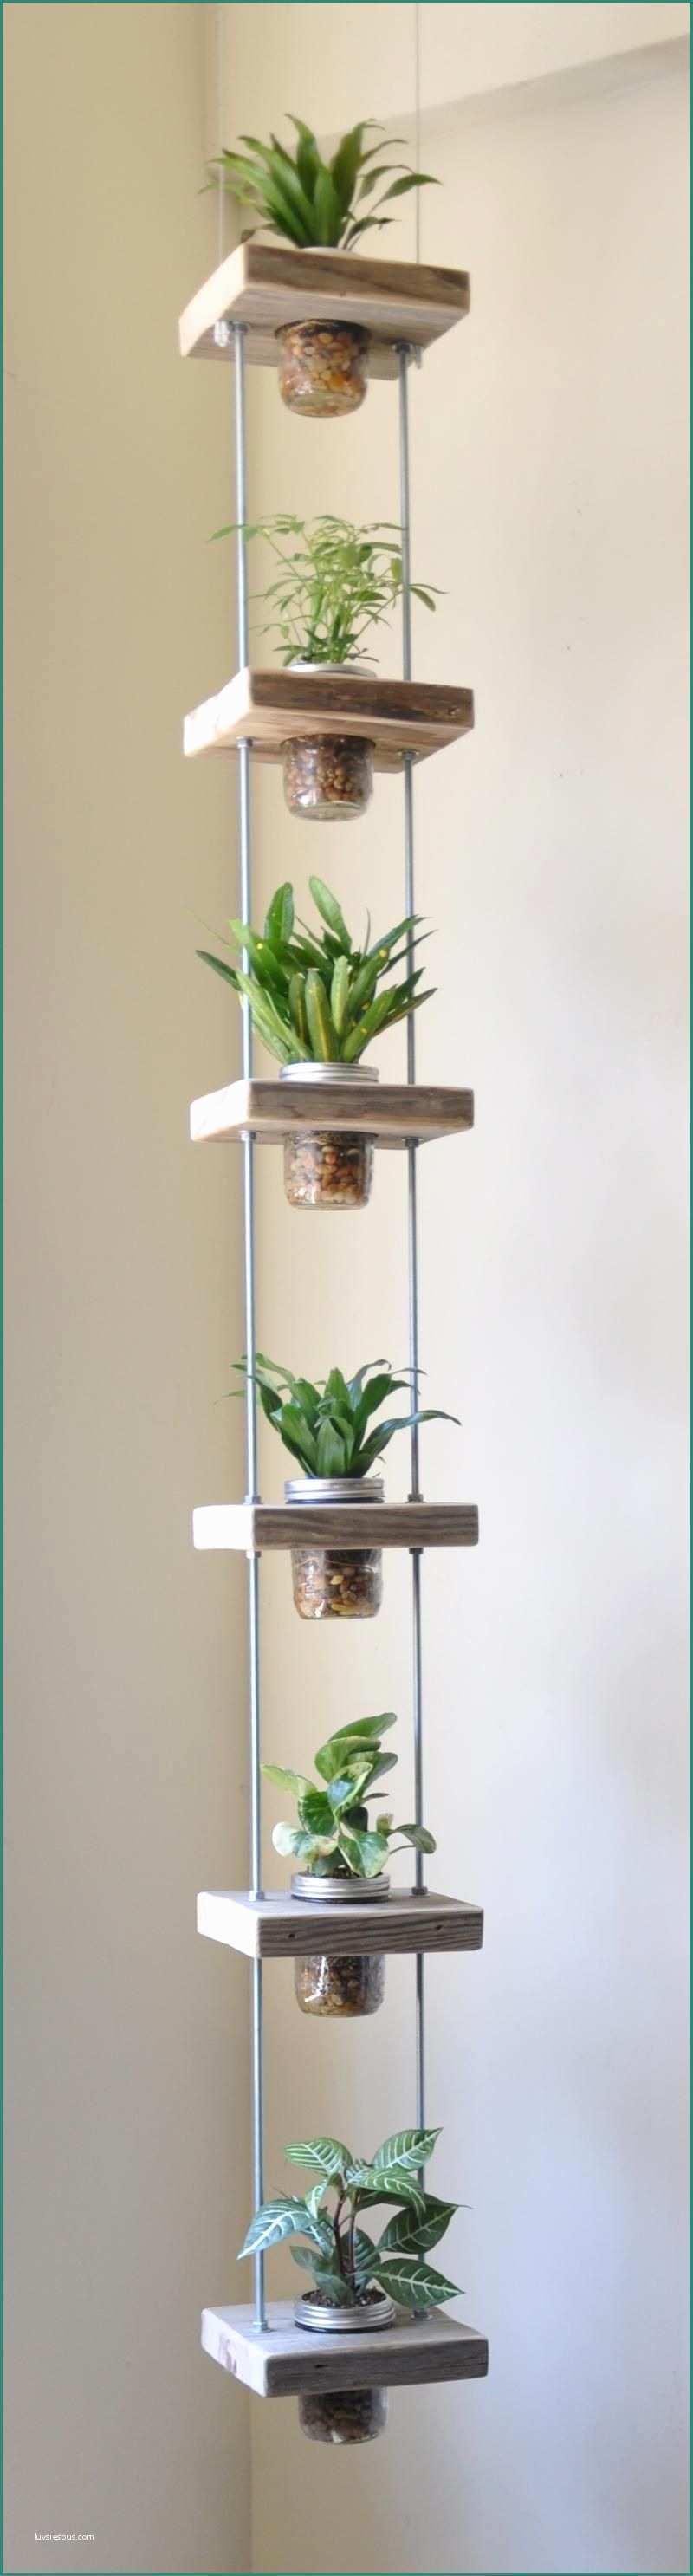 Ikea Giardino Verticale E Diy Inspiration Vertical Garden Pro Ti Da Provare